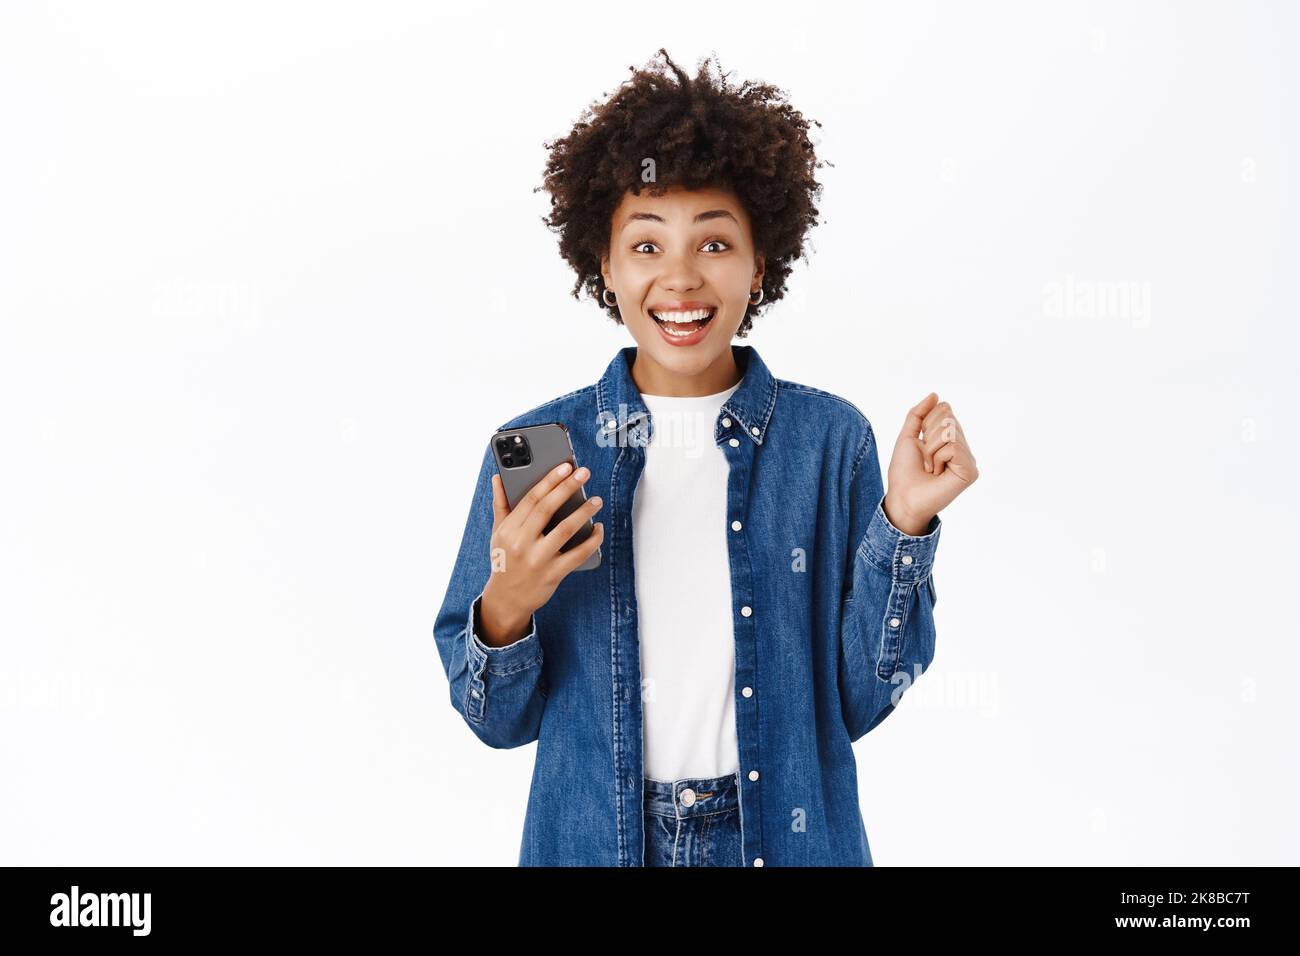 Une jeune femme heureuse et belle saute de l'excitation, en utilisant un téléphone mobile et en regardant joyeusement, en gagnant sur l'application pour smartphone, debout sur fond blanc Banque D'Images